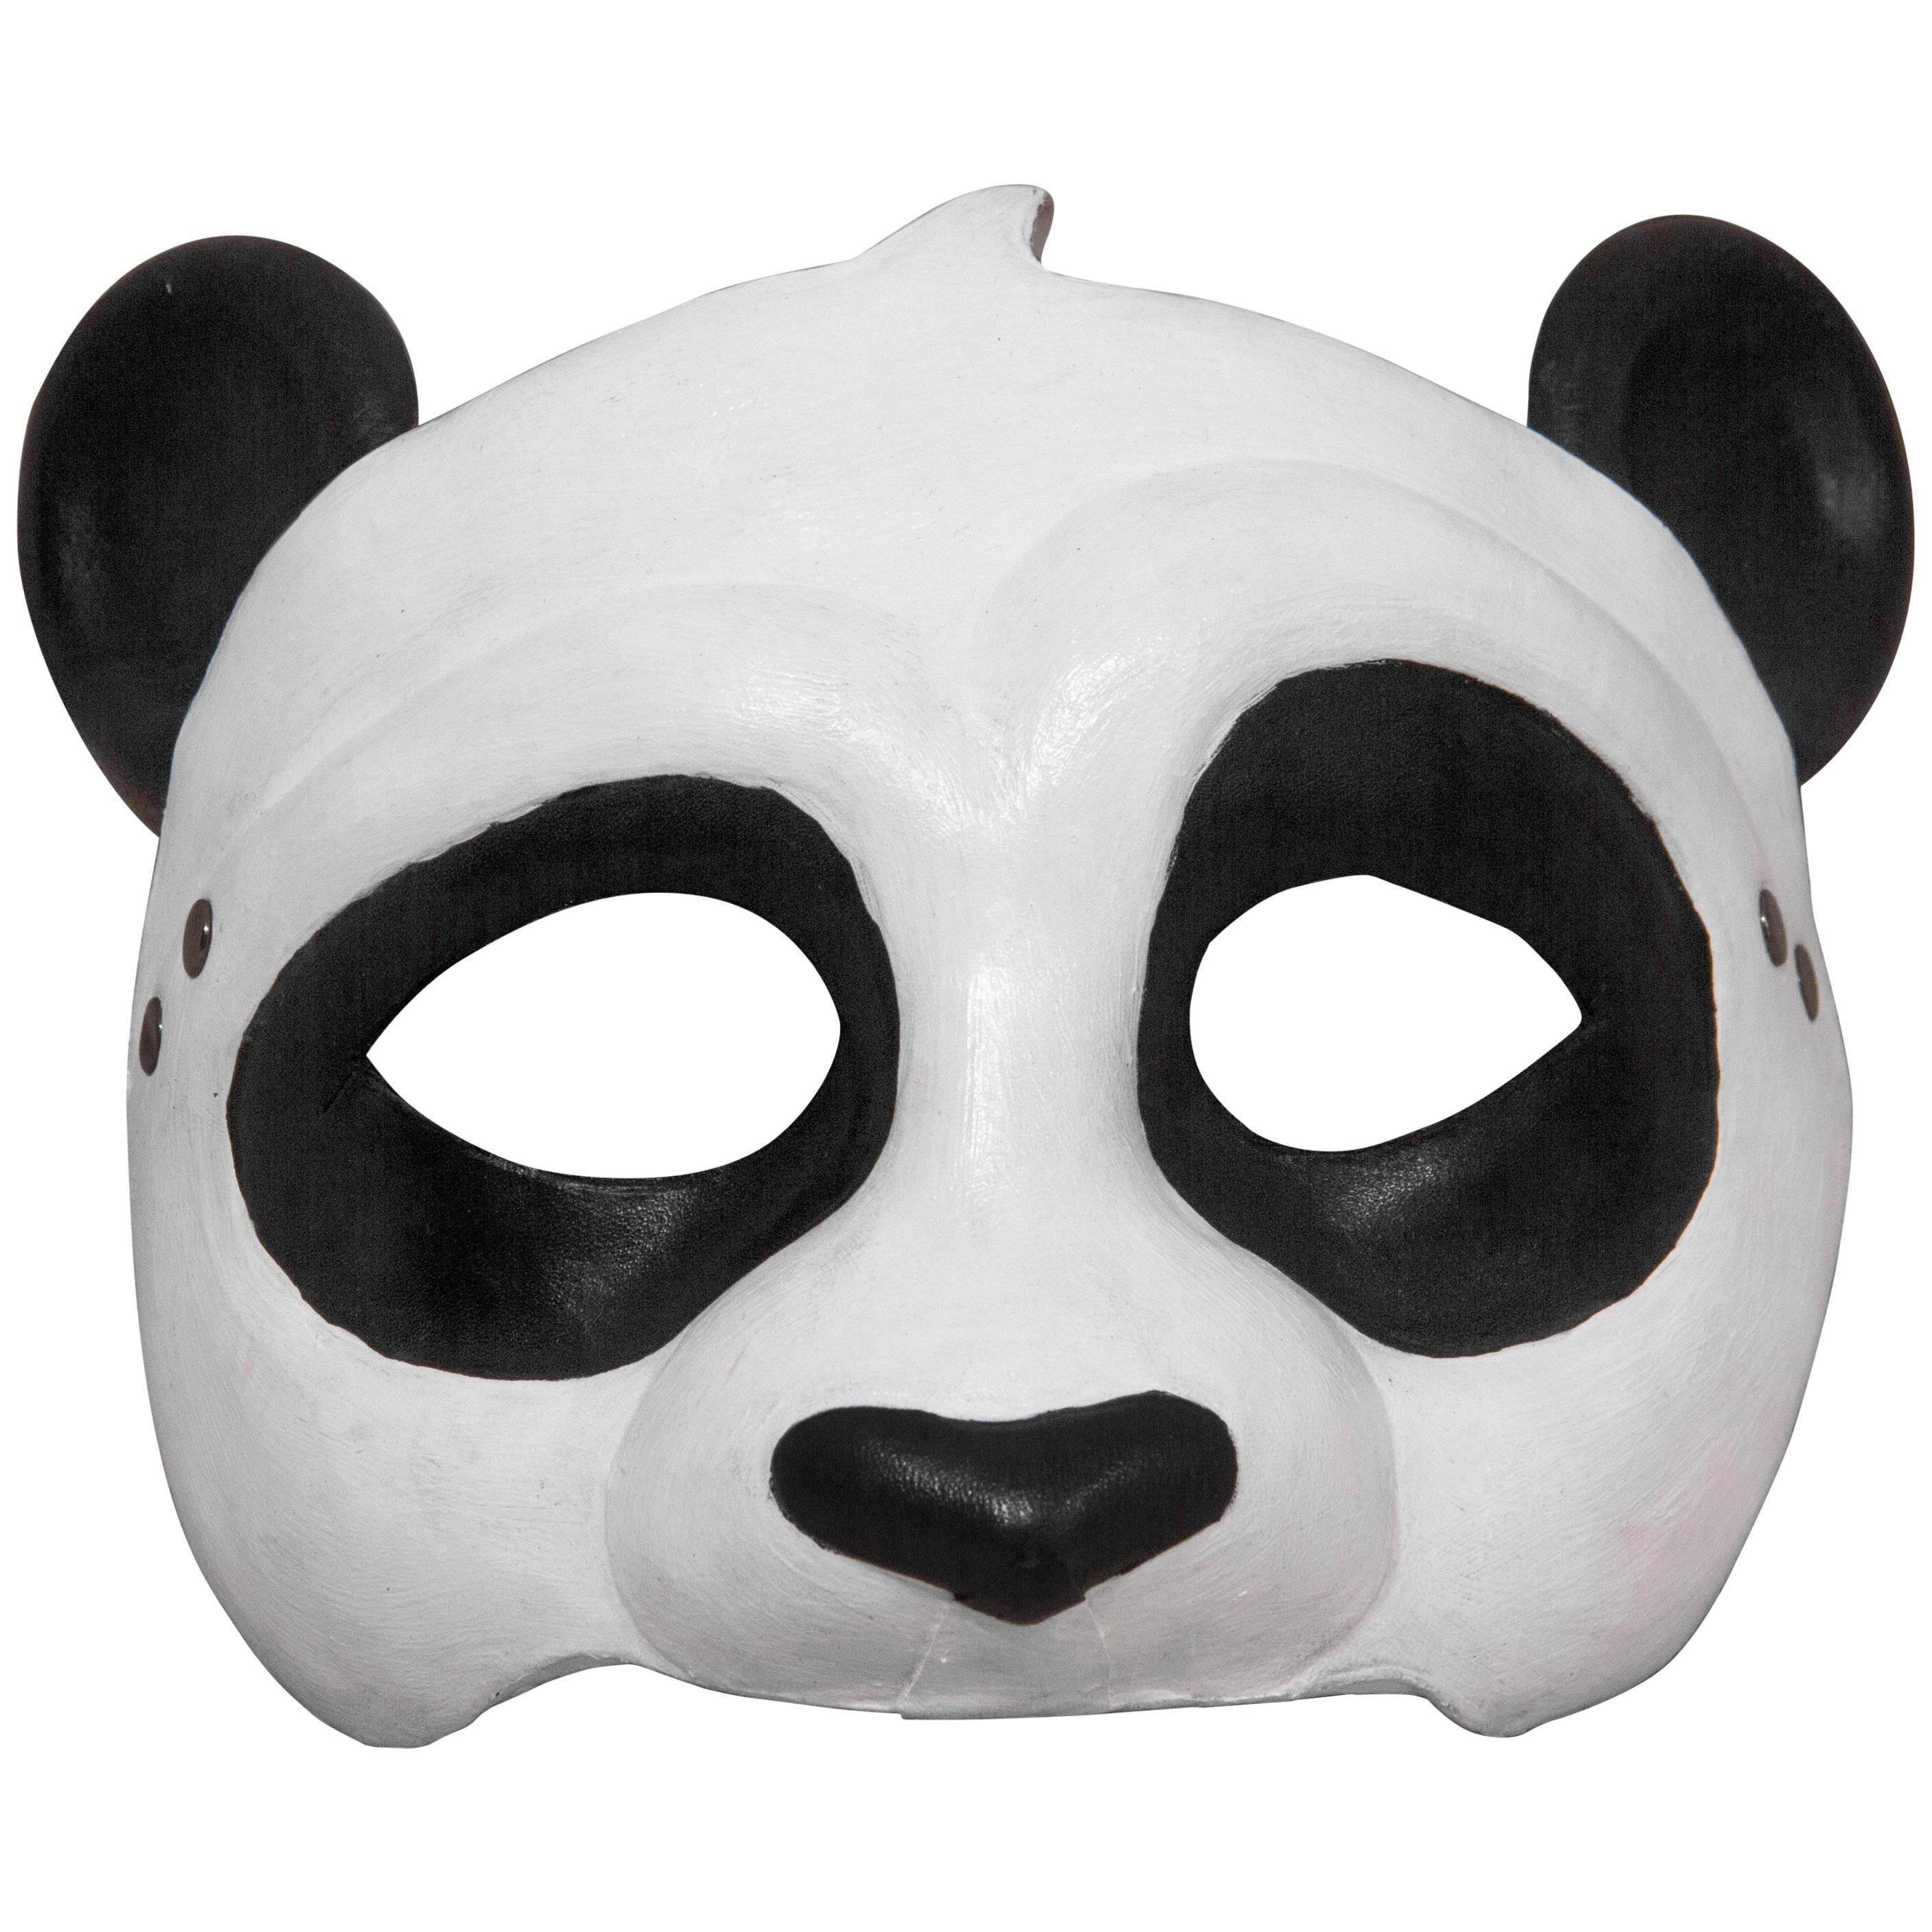 Leather Panda Mask